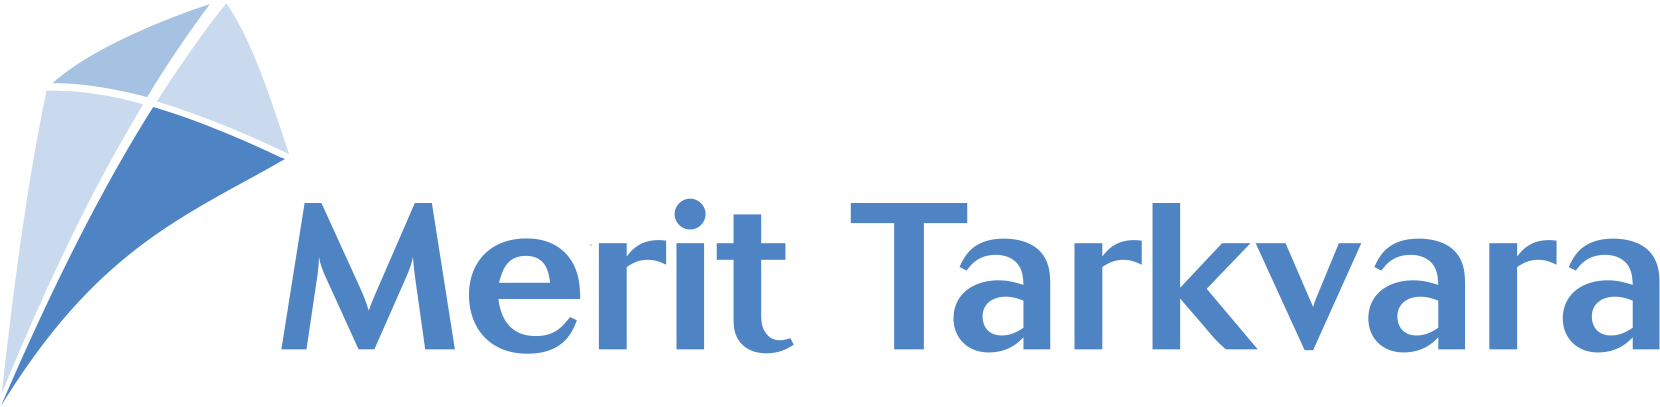 Merit tarkvara logo